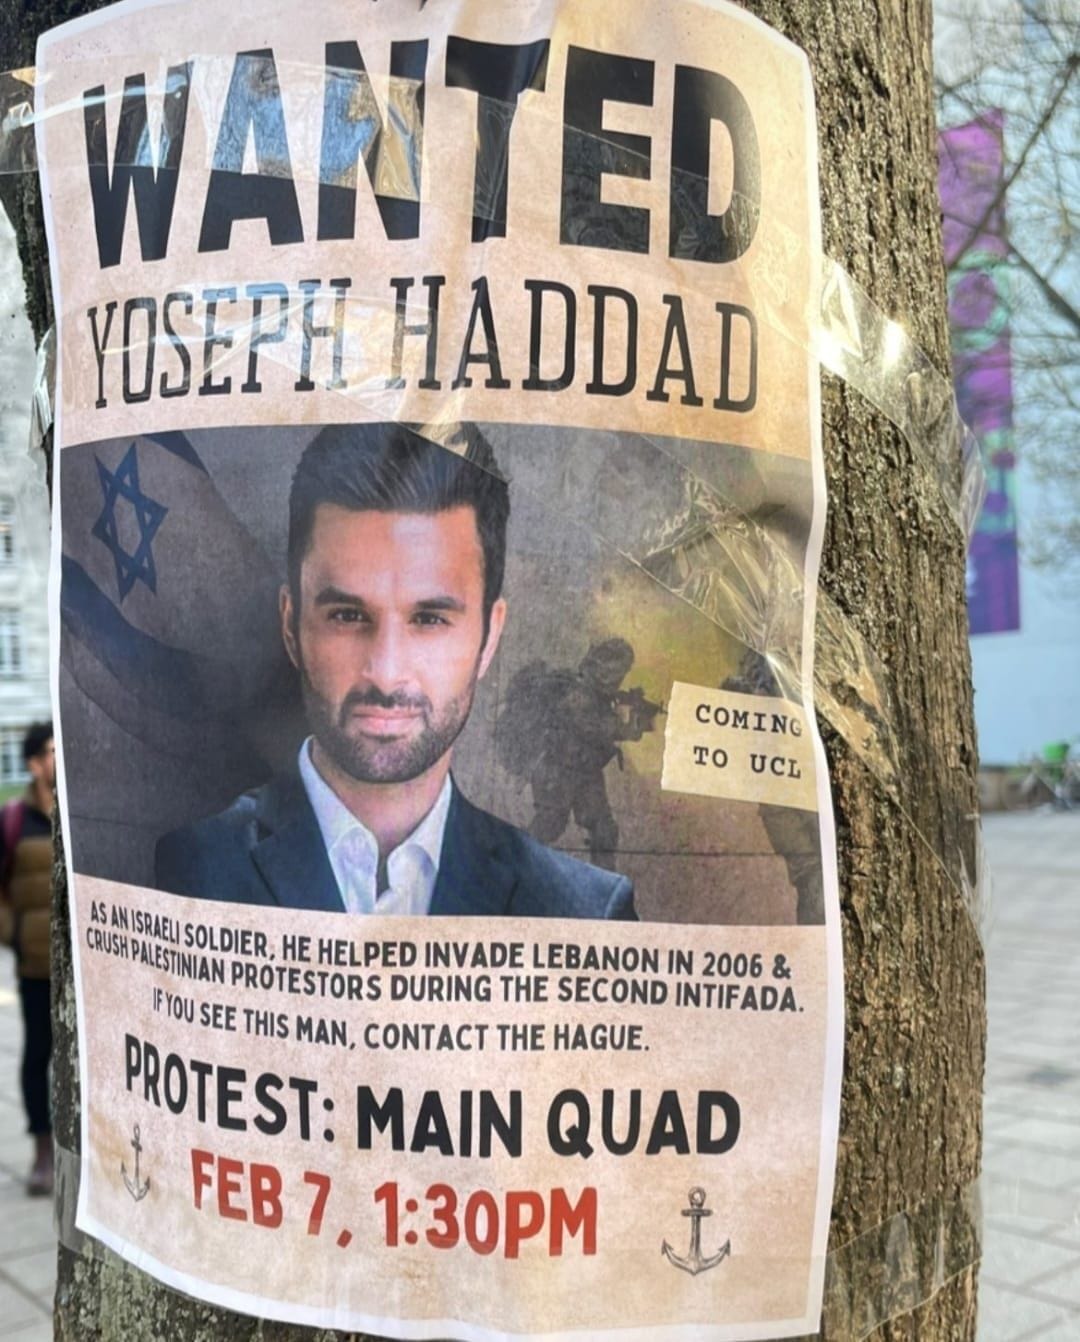 Protestplakat in London gegen Yoseph Haddad: "Ein Konflikt zwischen Barbaren und der zivilisierten Welt."